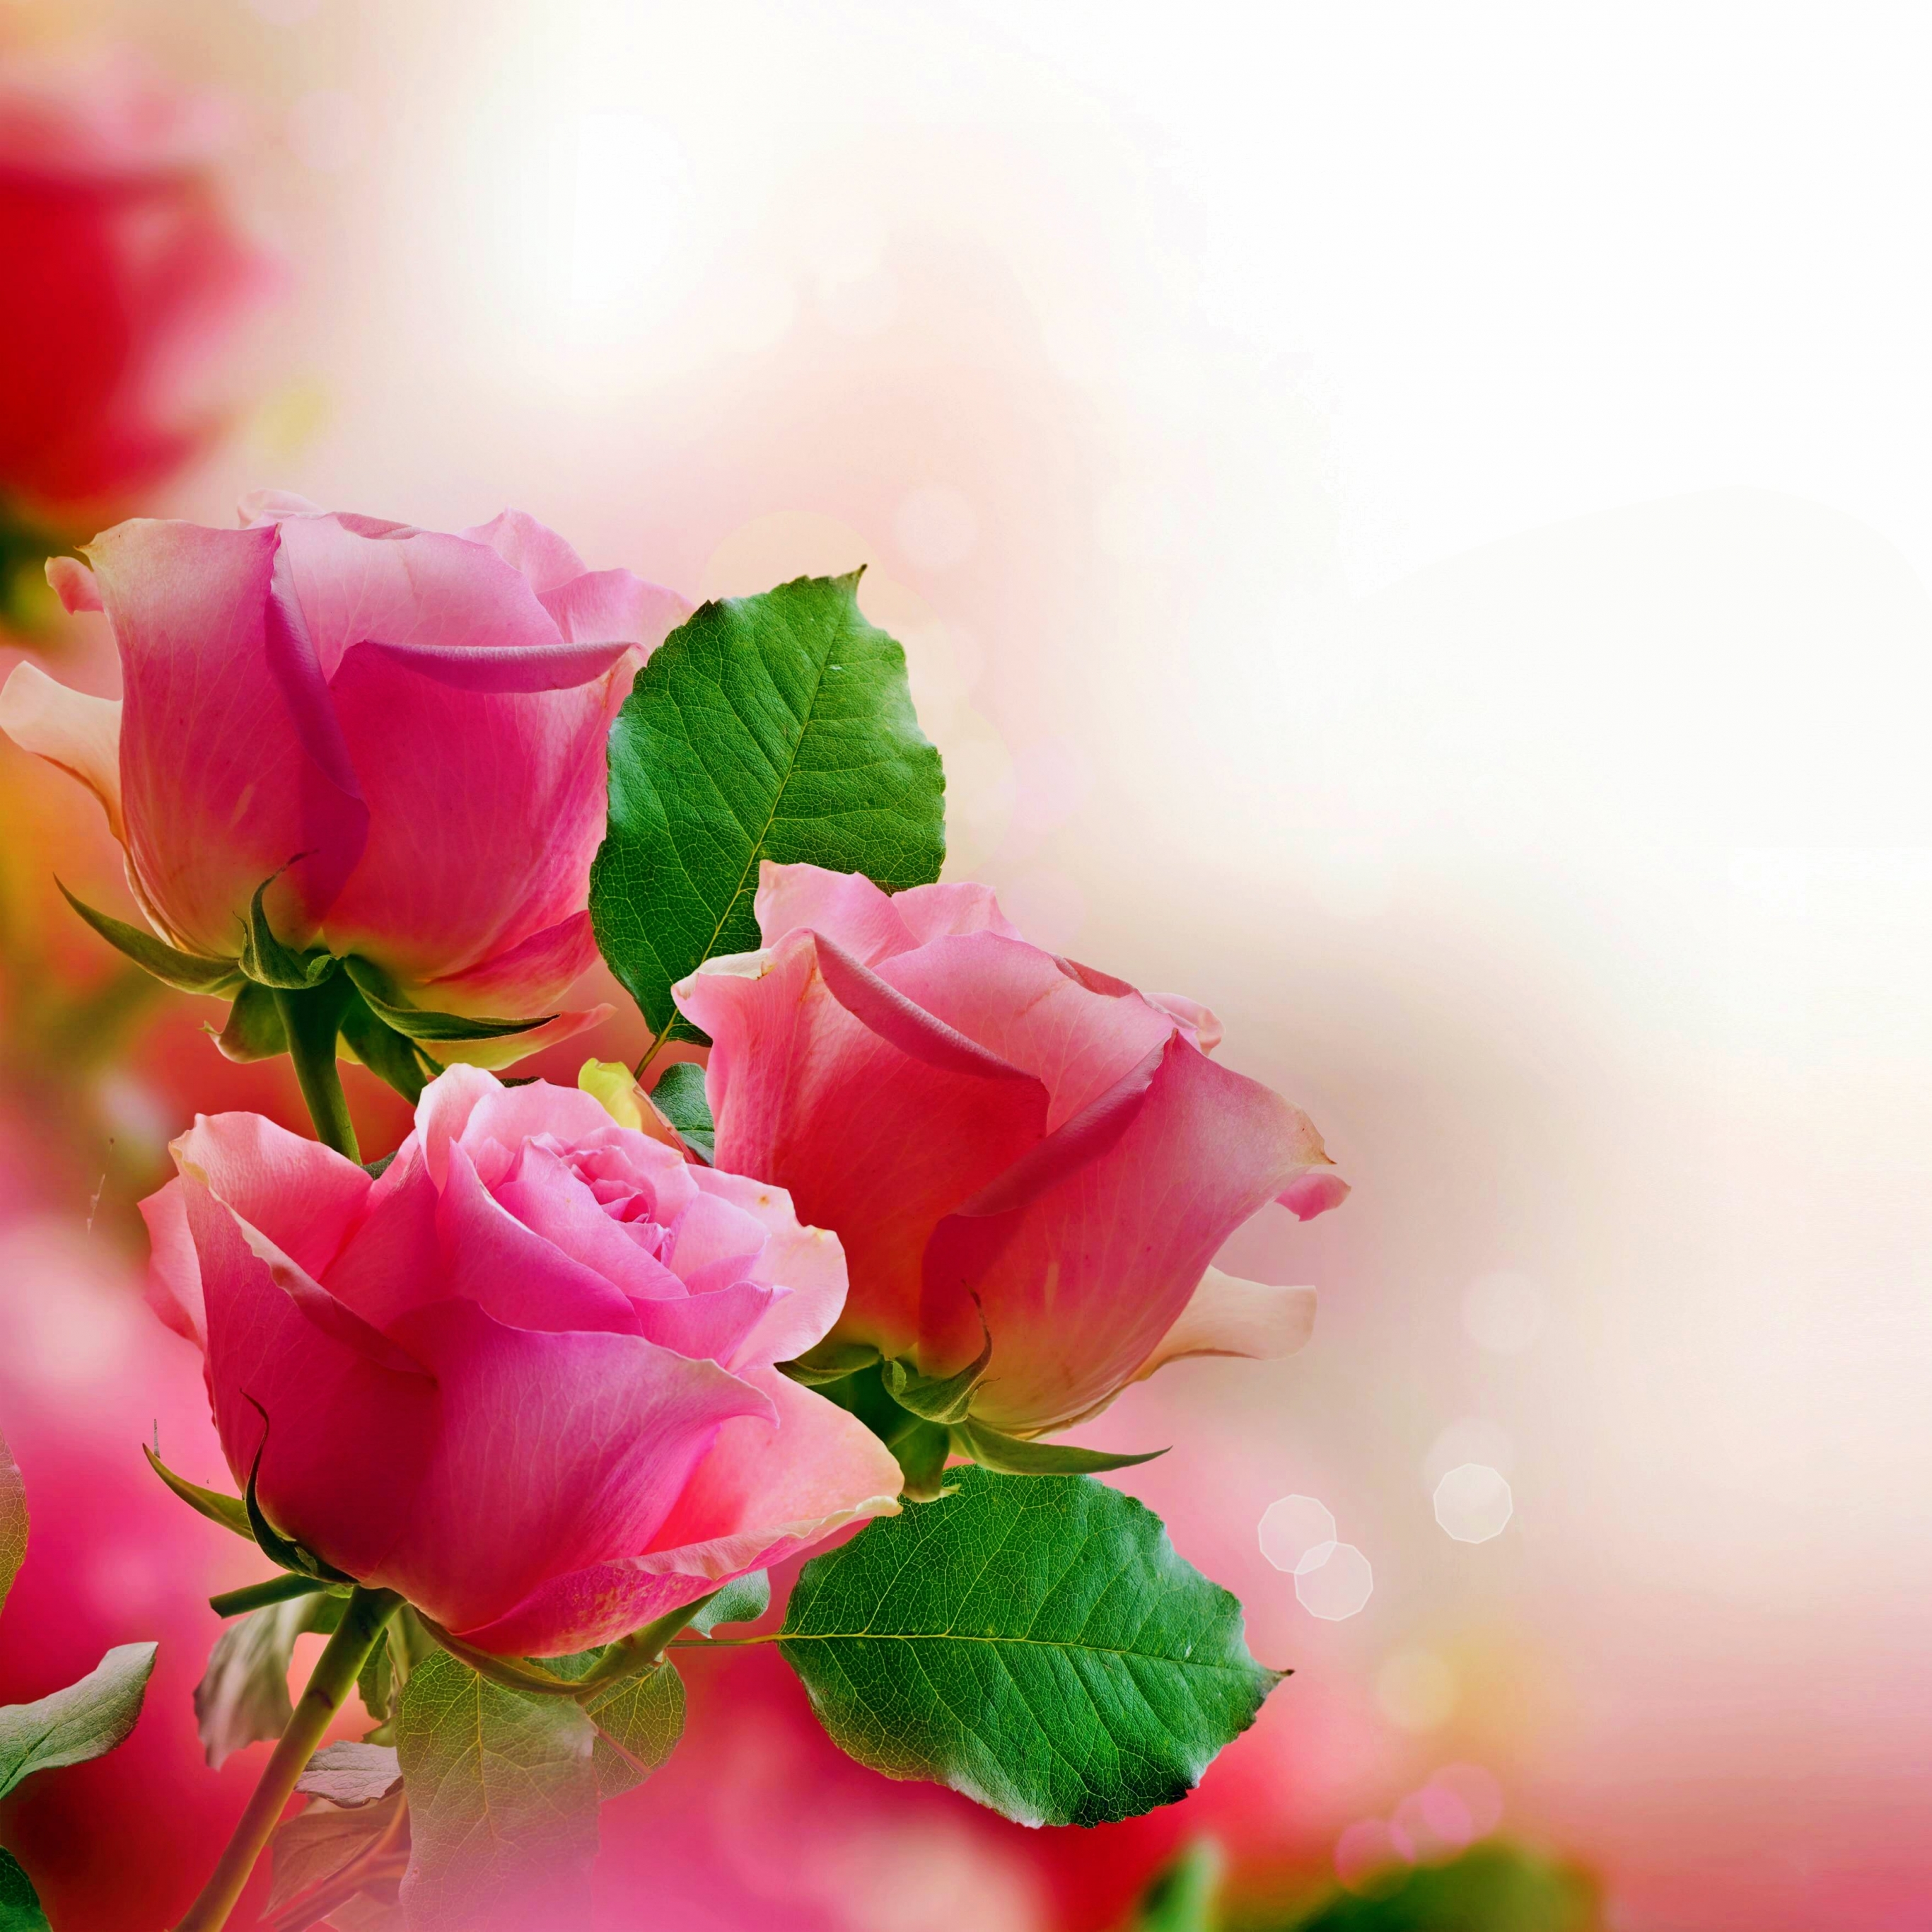 Скачать обои бесплатно Цветок, Роза, Пастель, Земля/природа, Розовая Роза, Флауэрсы картинка на рабочий стол ПК